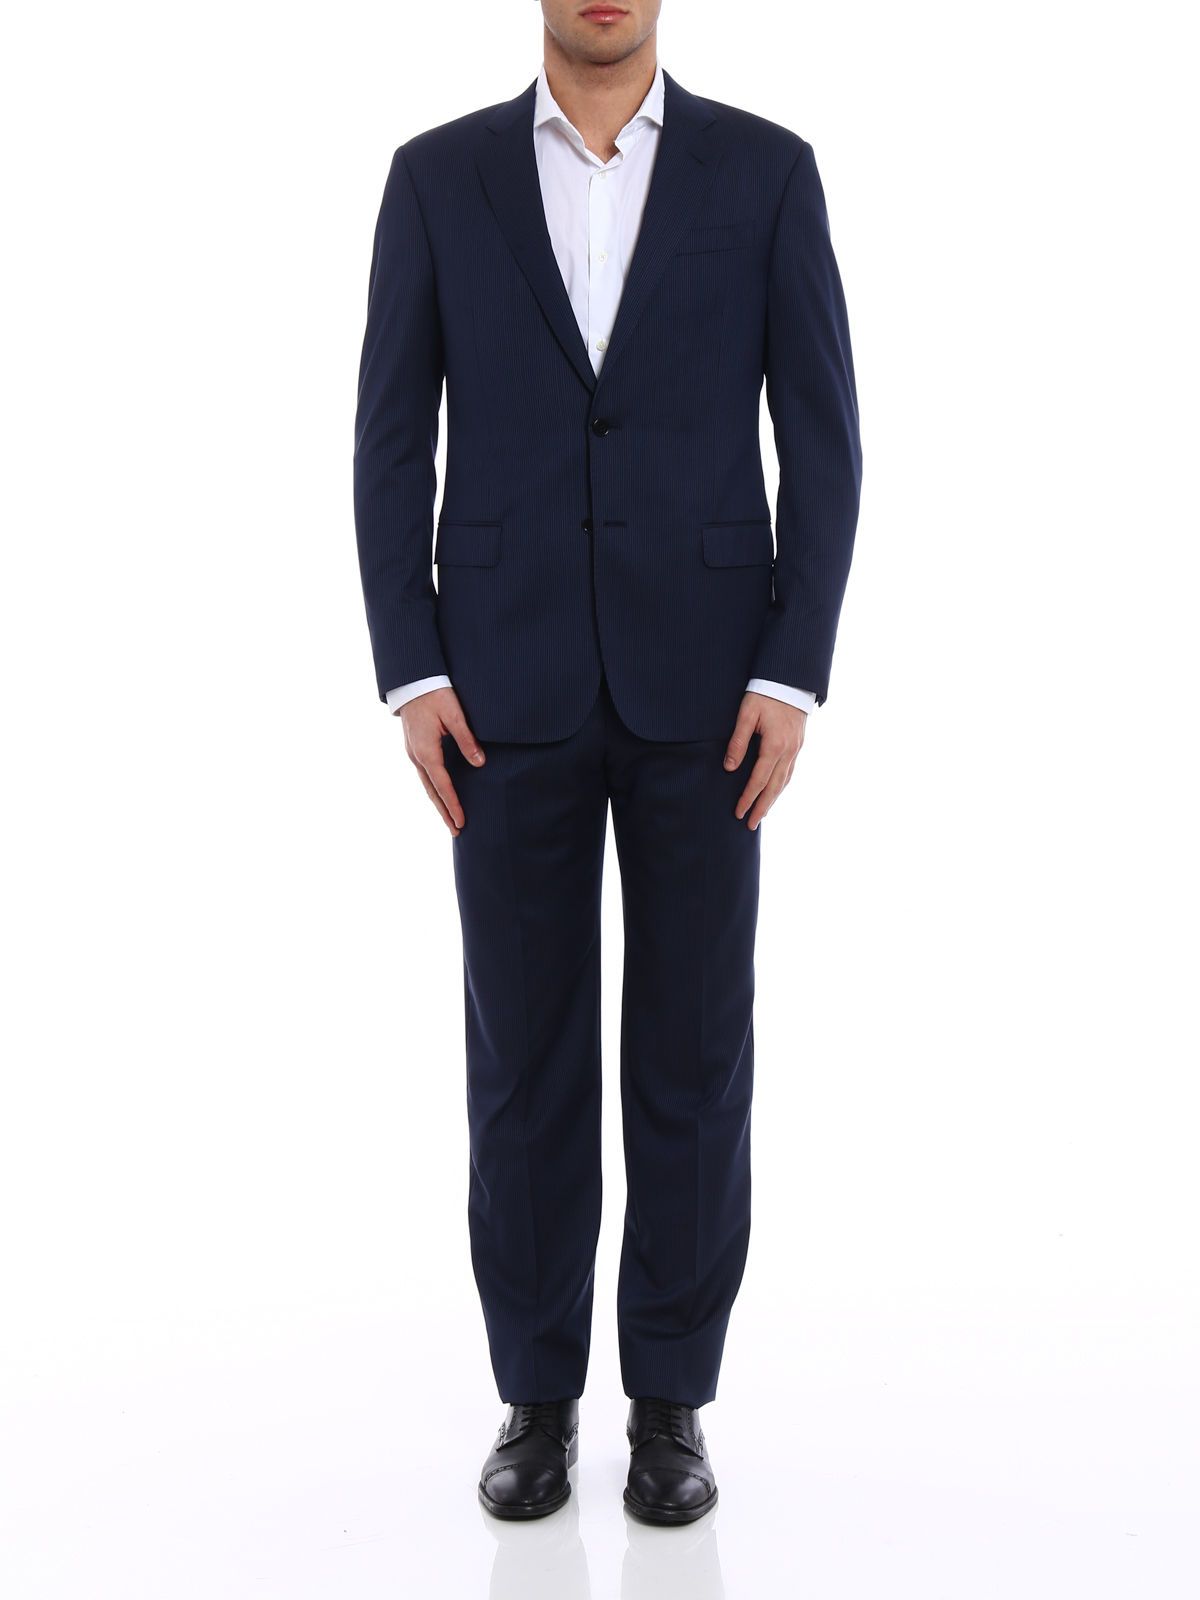 Giorgio Armani - Giorgio Armani Formal Pinstripe Suit, Men's Suits ...